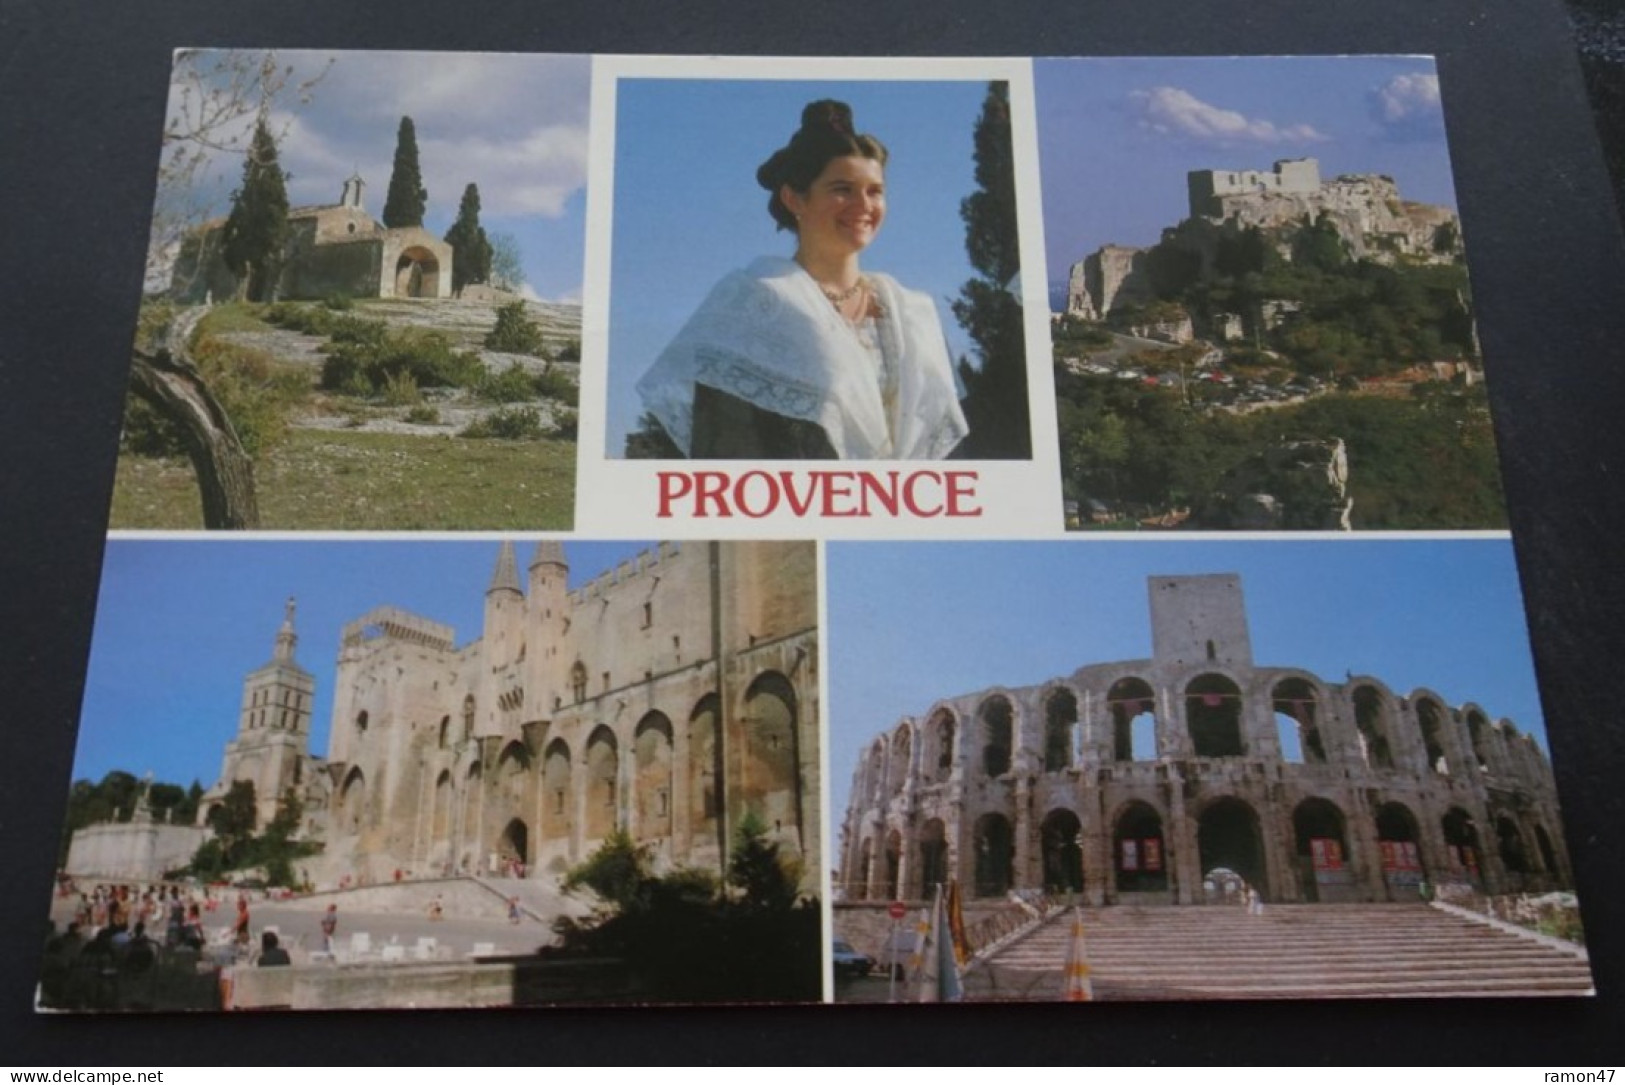 Provence - L'Arlésienne - St-Sixte - Les Baux - Avignon - Arles  -  Editions Du Boumian, Ste Ajax, Monaco - Provence-Alpes-Côte D'Azur